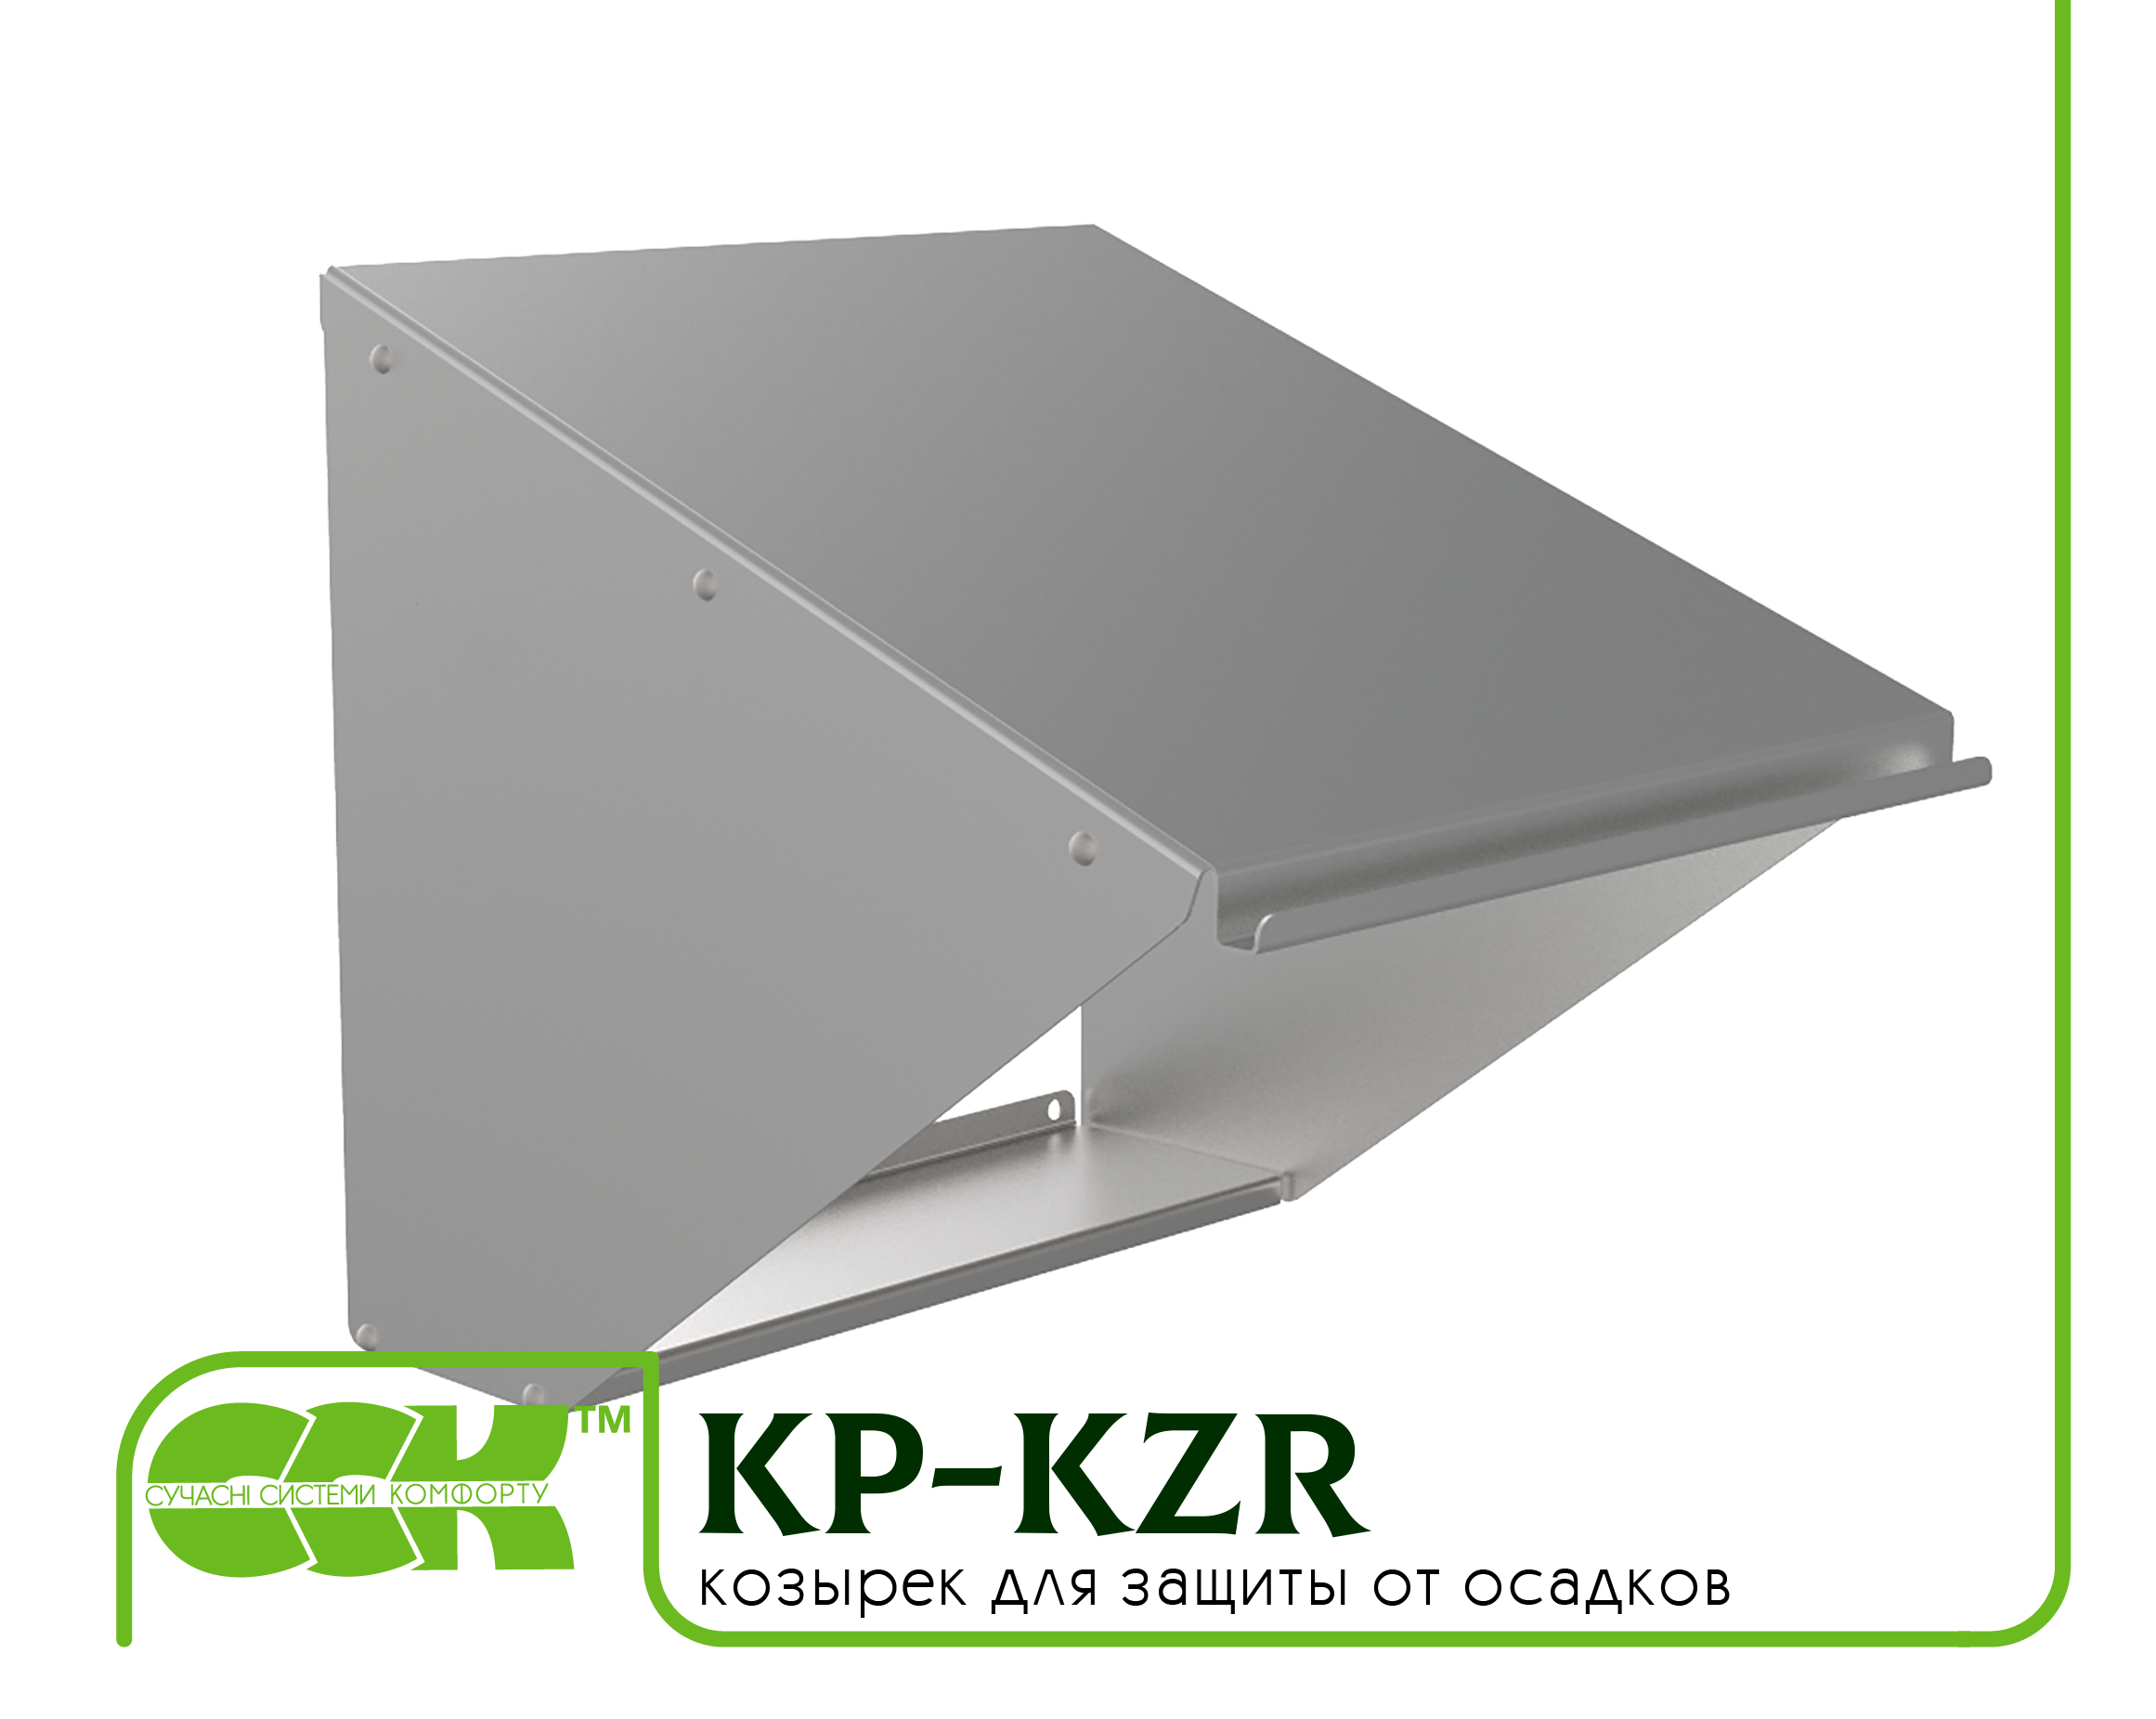 Козырек для защиты вентилятора KP-KZR-80-80